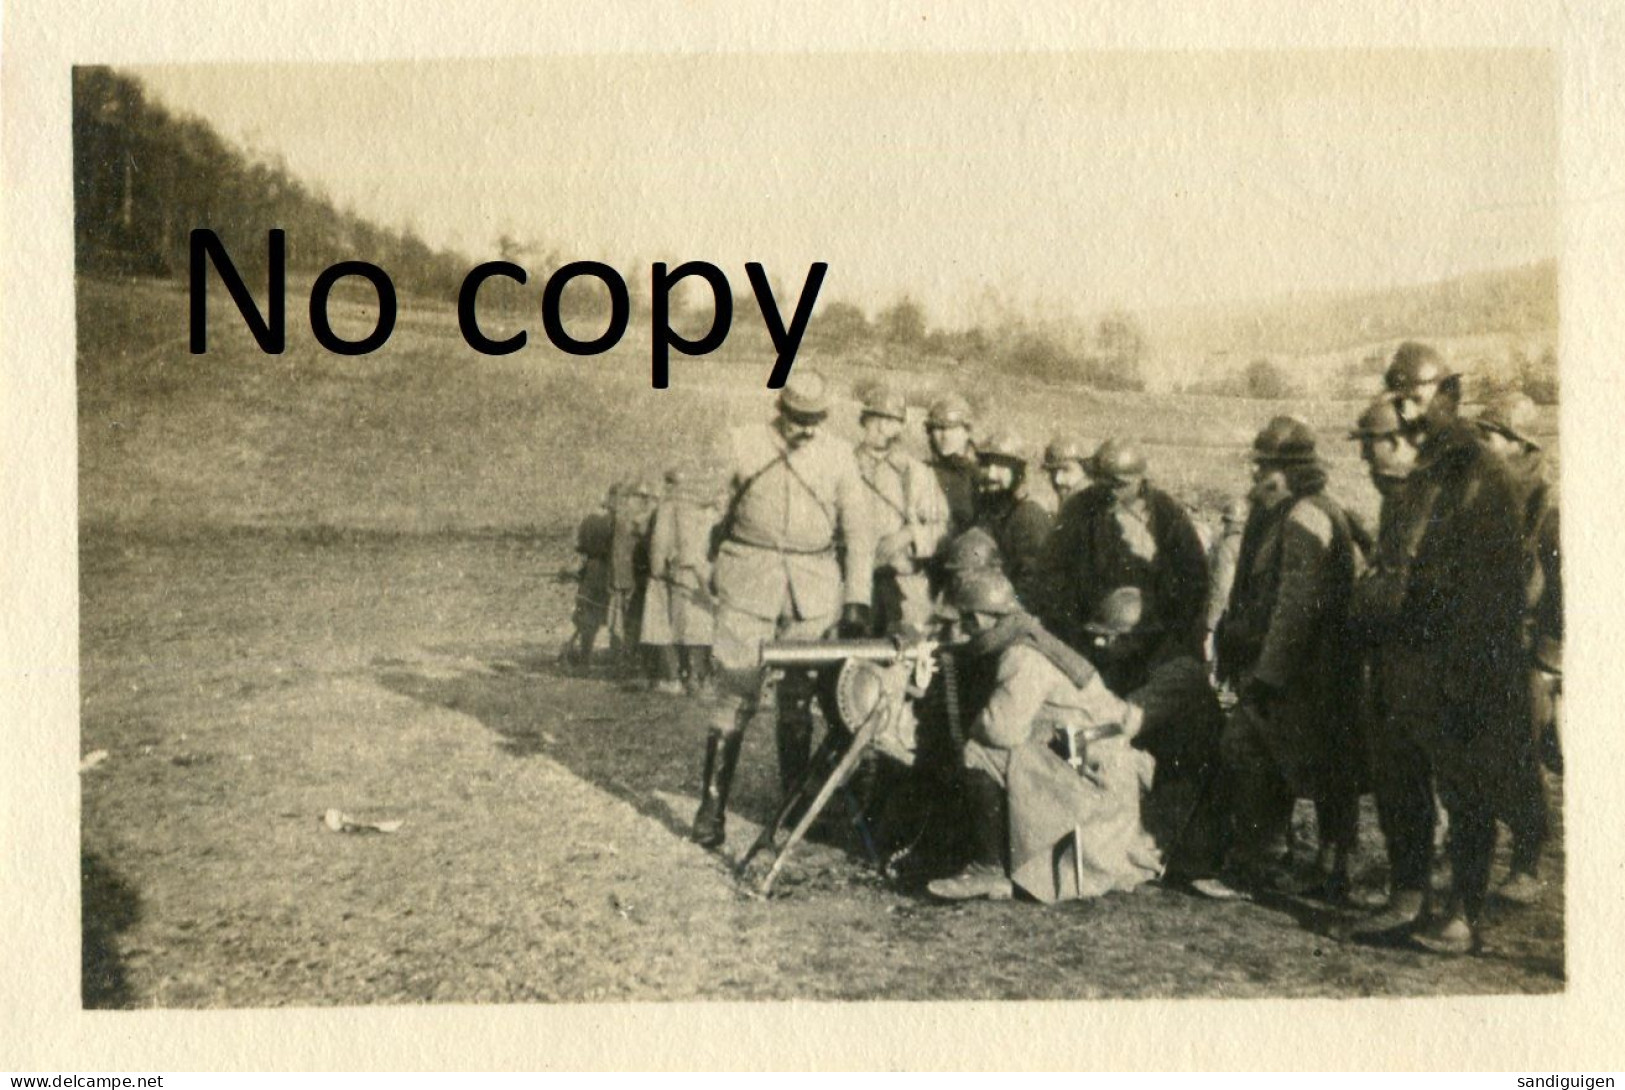 PHOTO FRANCAISE - POILUS A L'EXERCICE A LA MITRAILLEUSE A LA CLAON PRES DE NEUVILLY EN ARGONNE MEUSE - GUERRE 1914 1918 - Krieg, Militär